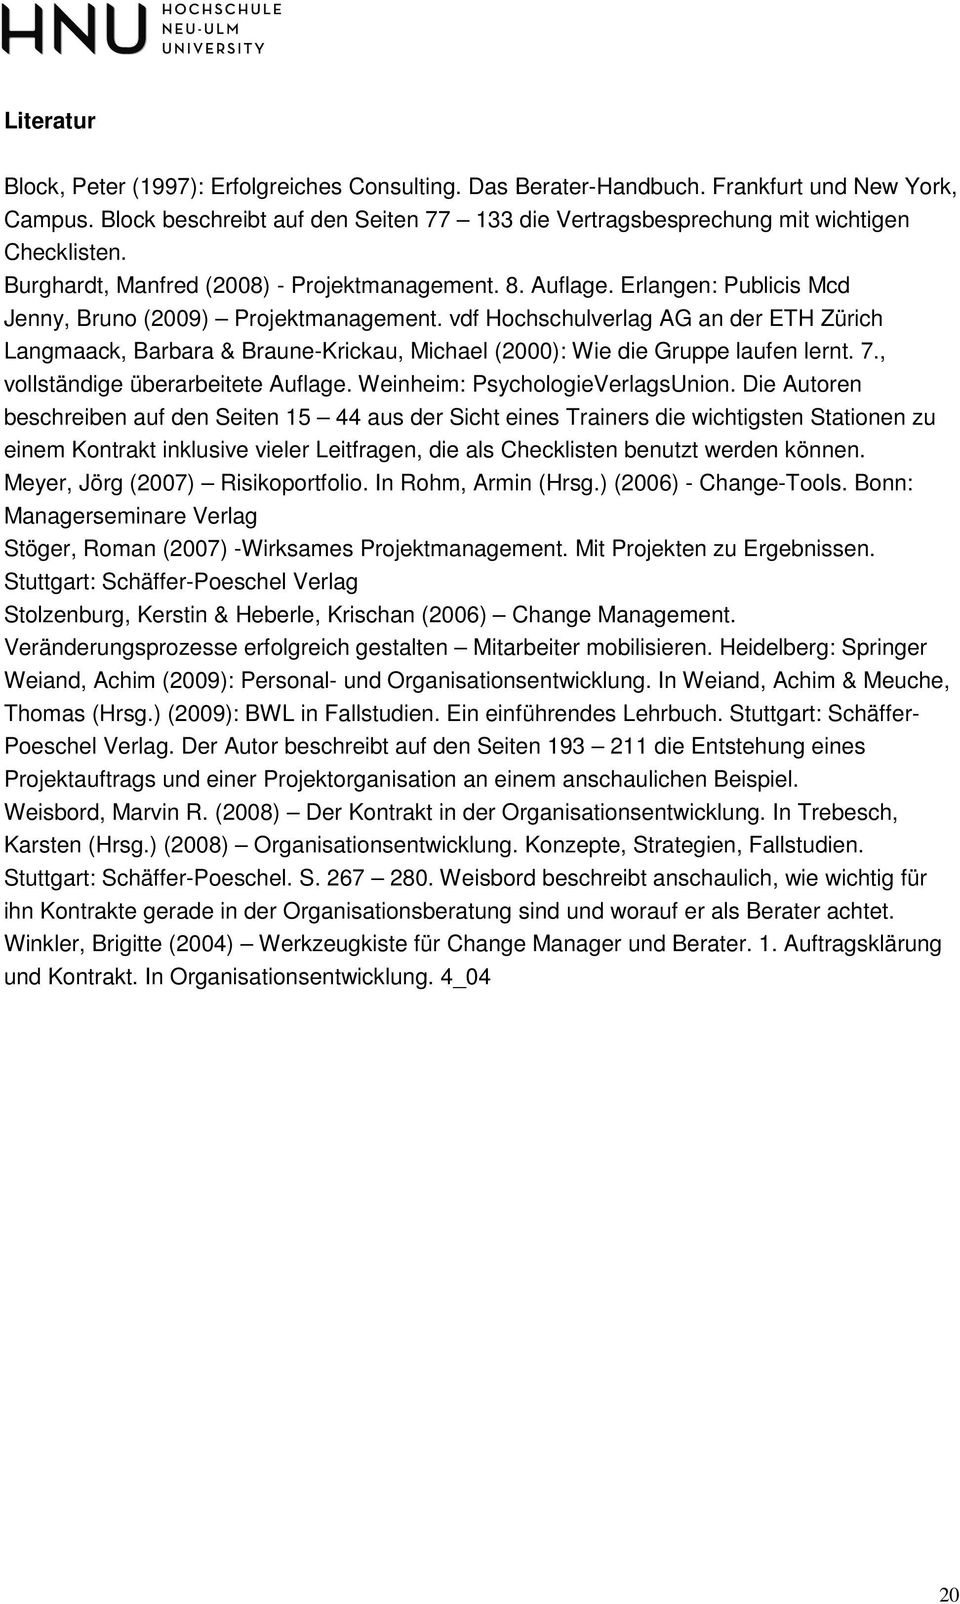 vdf Hochschulverlag AG an der ETH Zürich Langmaack, Barbara & Braune-Krickau, Michael (2000): Wie die Gruppe laufen lernt. 7., vollständige überarbeitete Auflage. Weinheim: PsychologieVerlagsUnion.